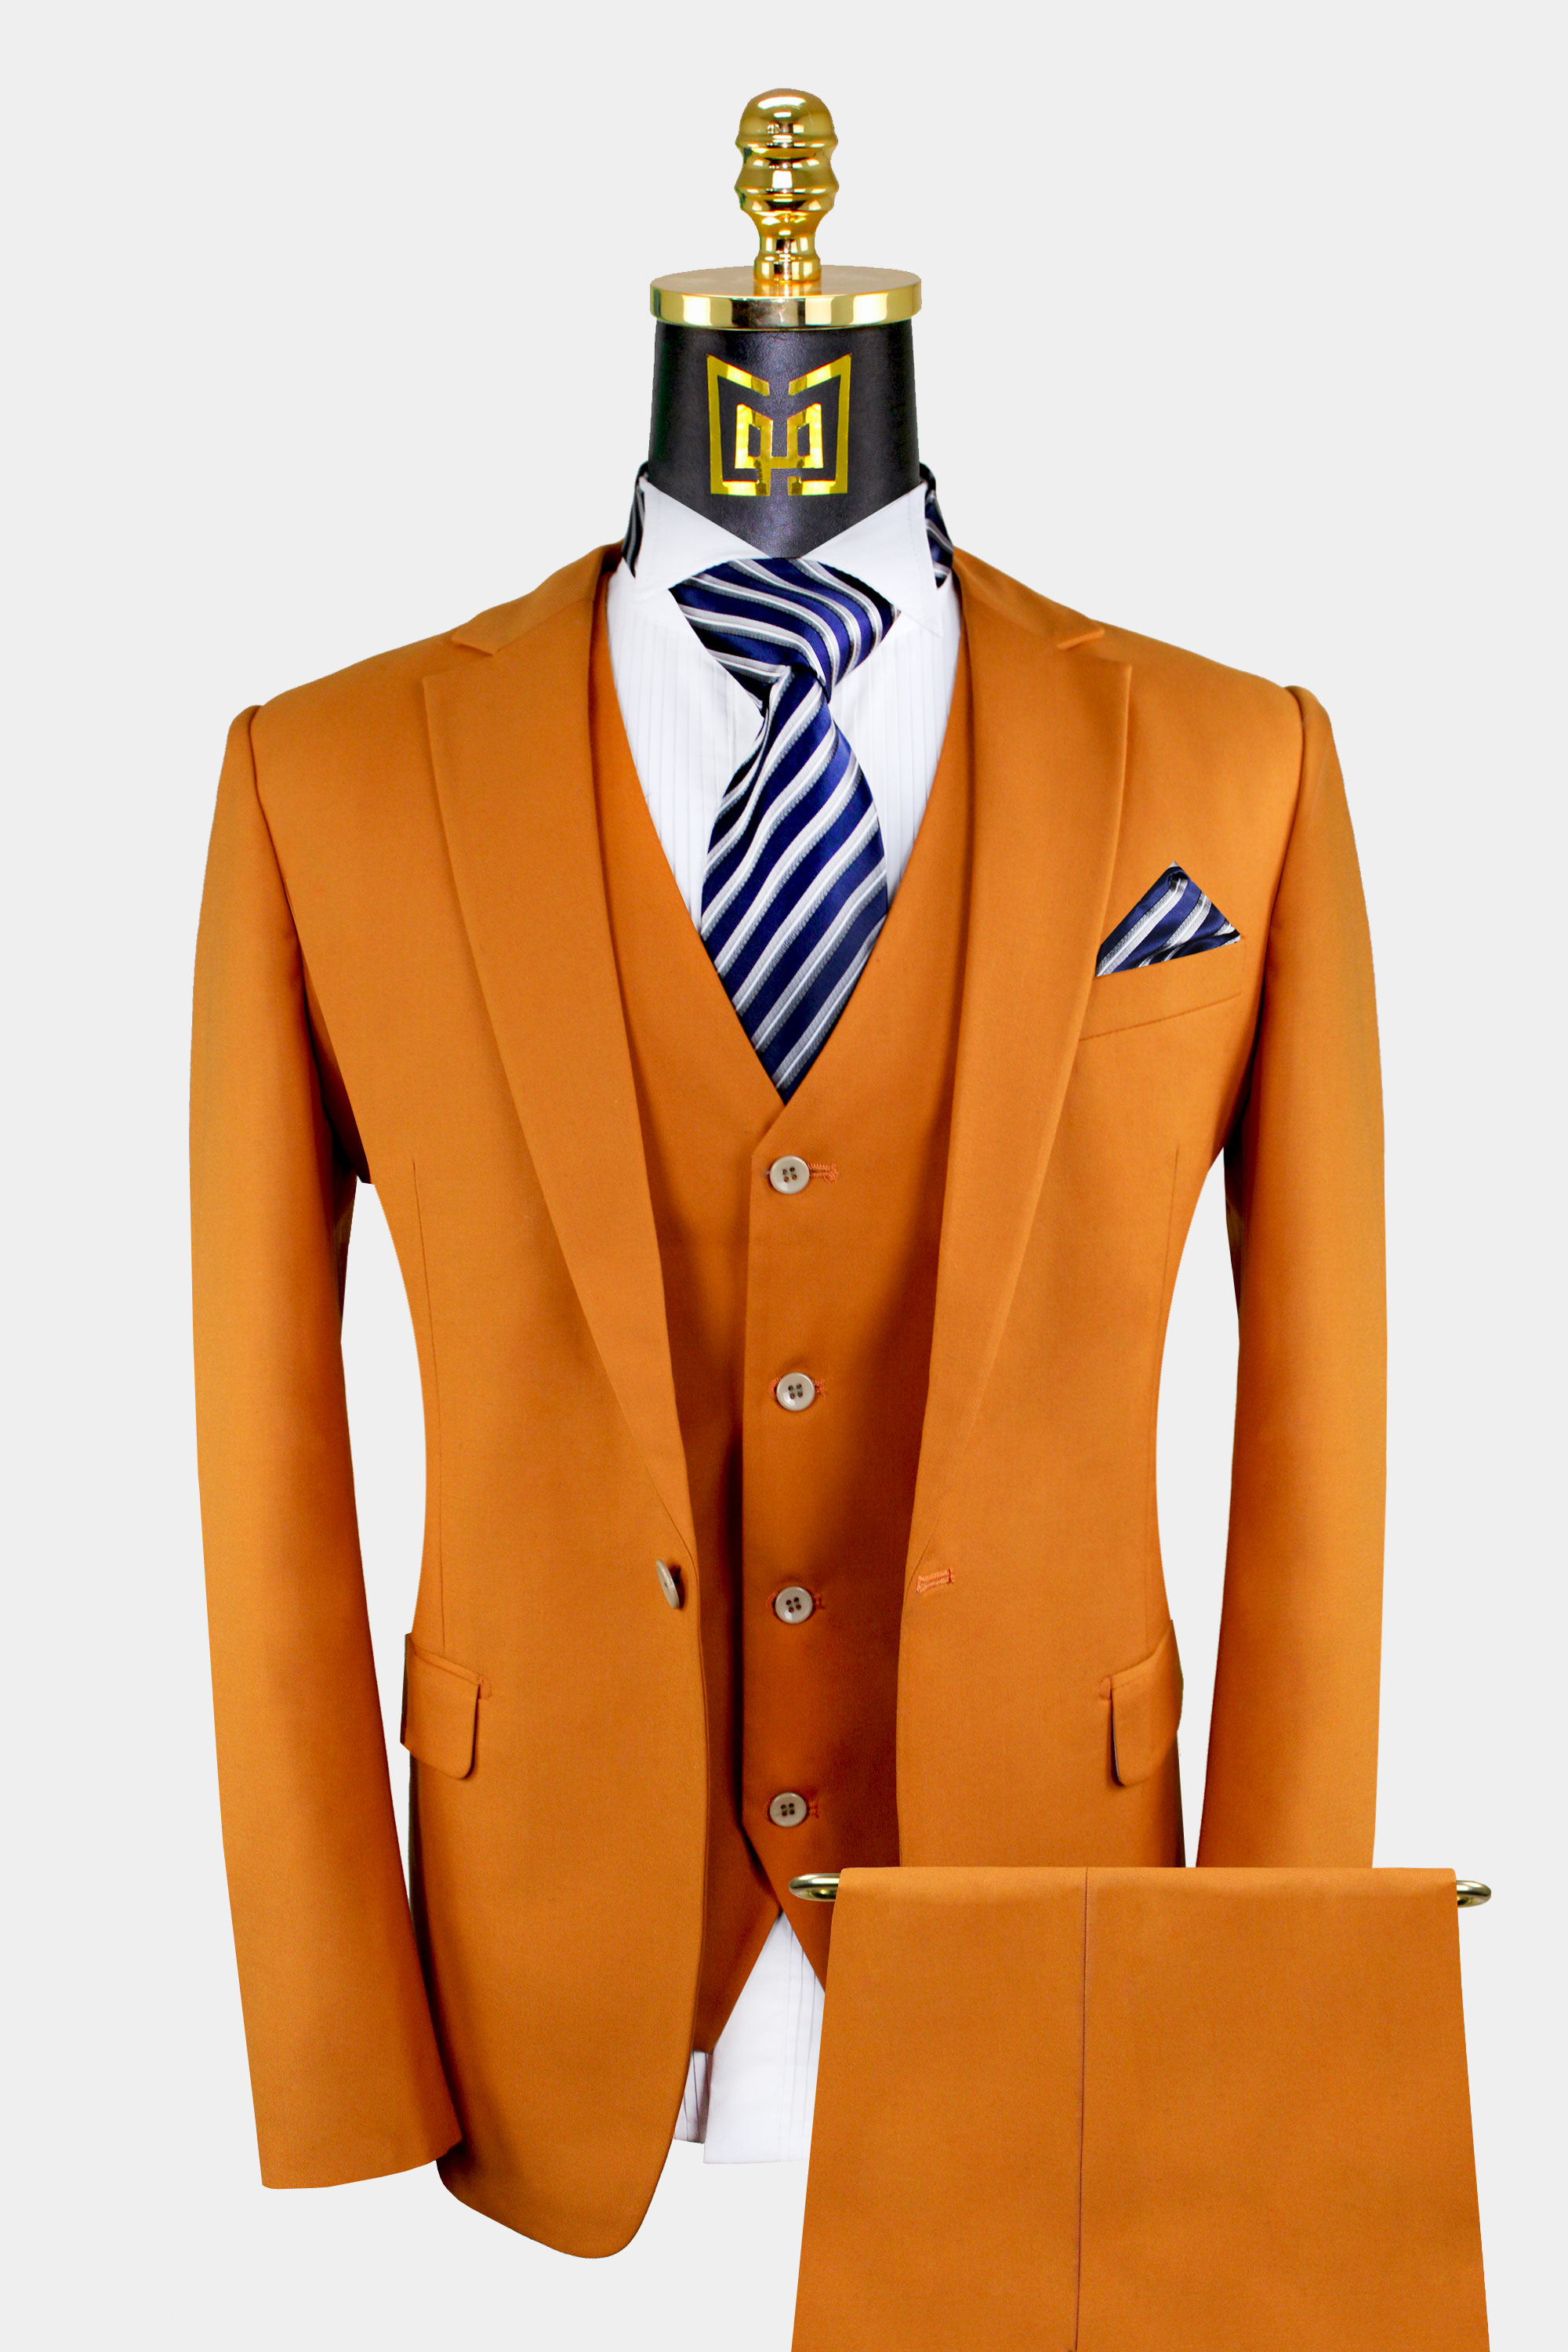 Mens-Burnt-Orange-Suit-Groom-Wedding-Prom-Tuxedo-from-Gentlemansguru.com